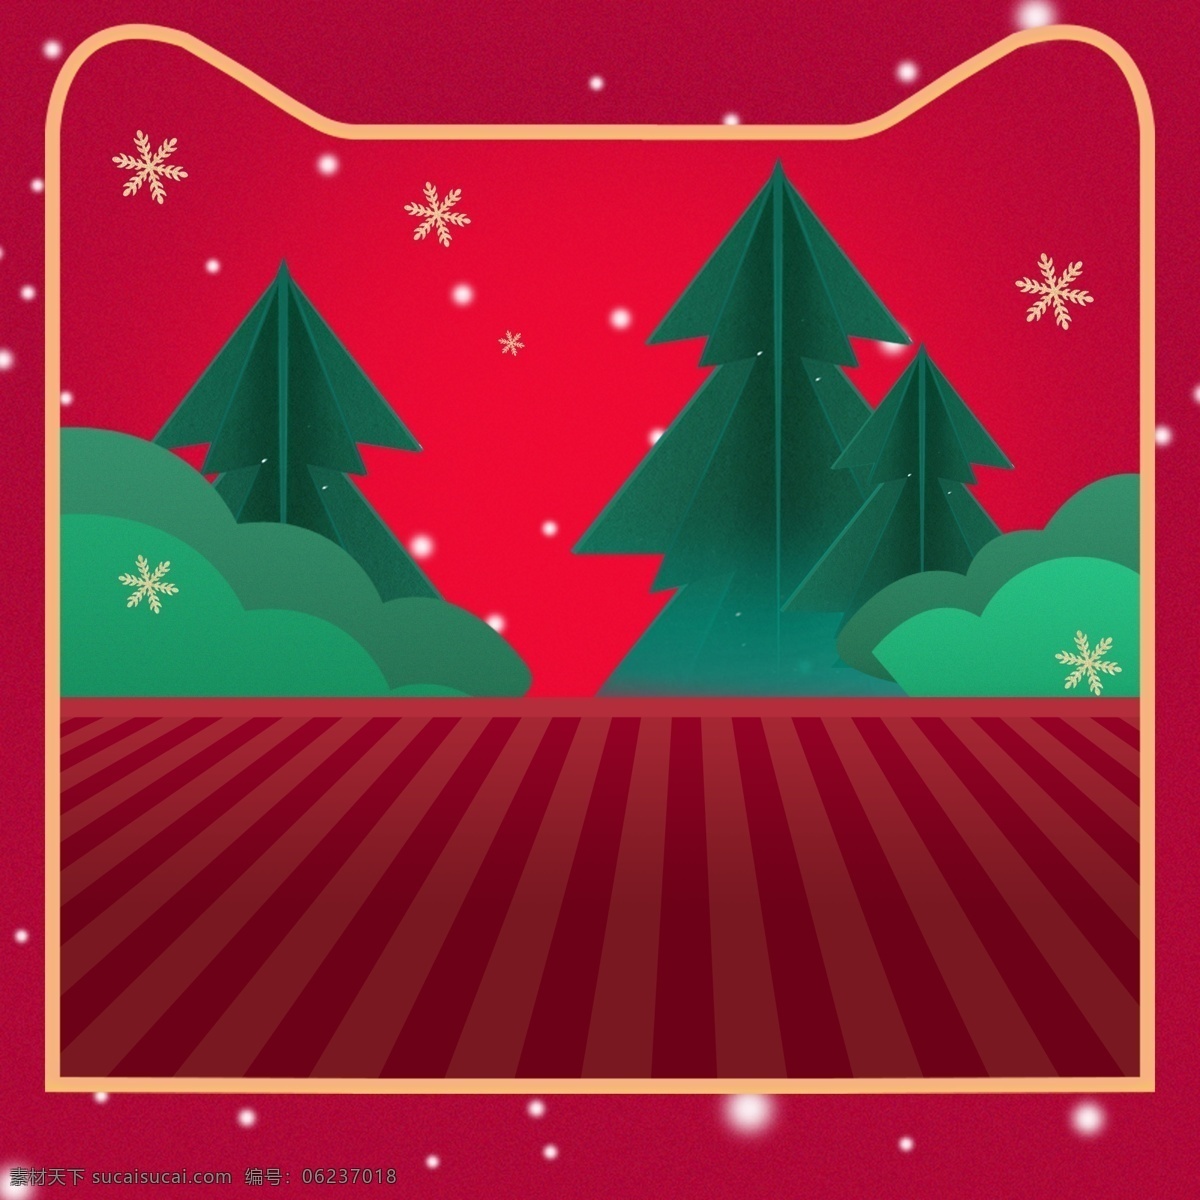 红色 圣诞 主 图 背景 雪花 圣诞树 红色背景 圣诞背景 主图背景 直通车